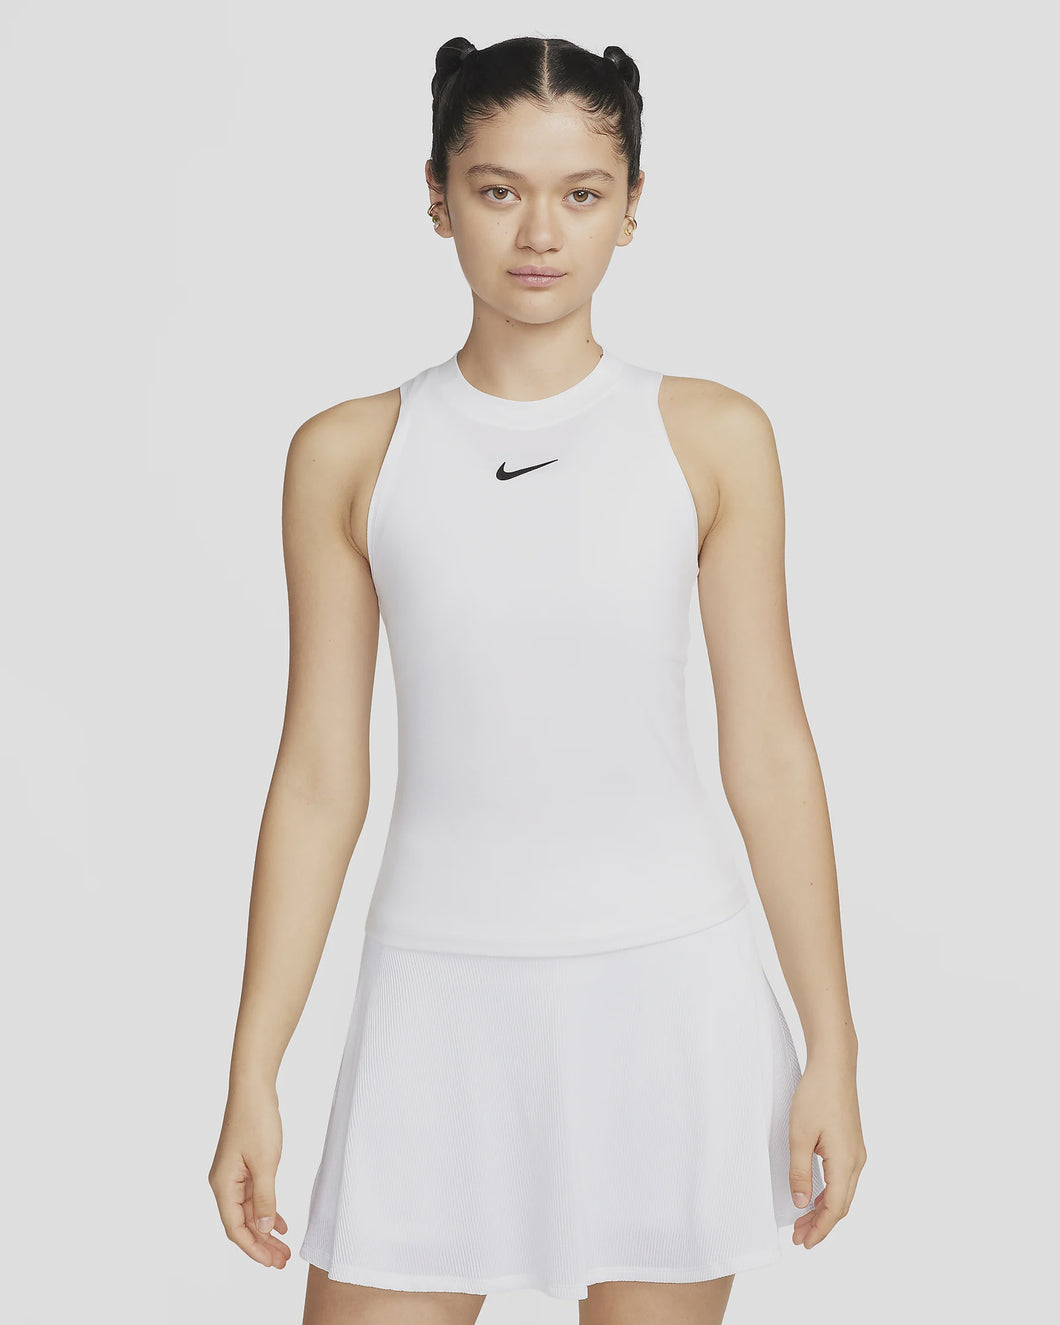 Nike Women's Dri-FIT Tank-White